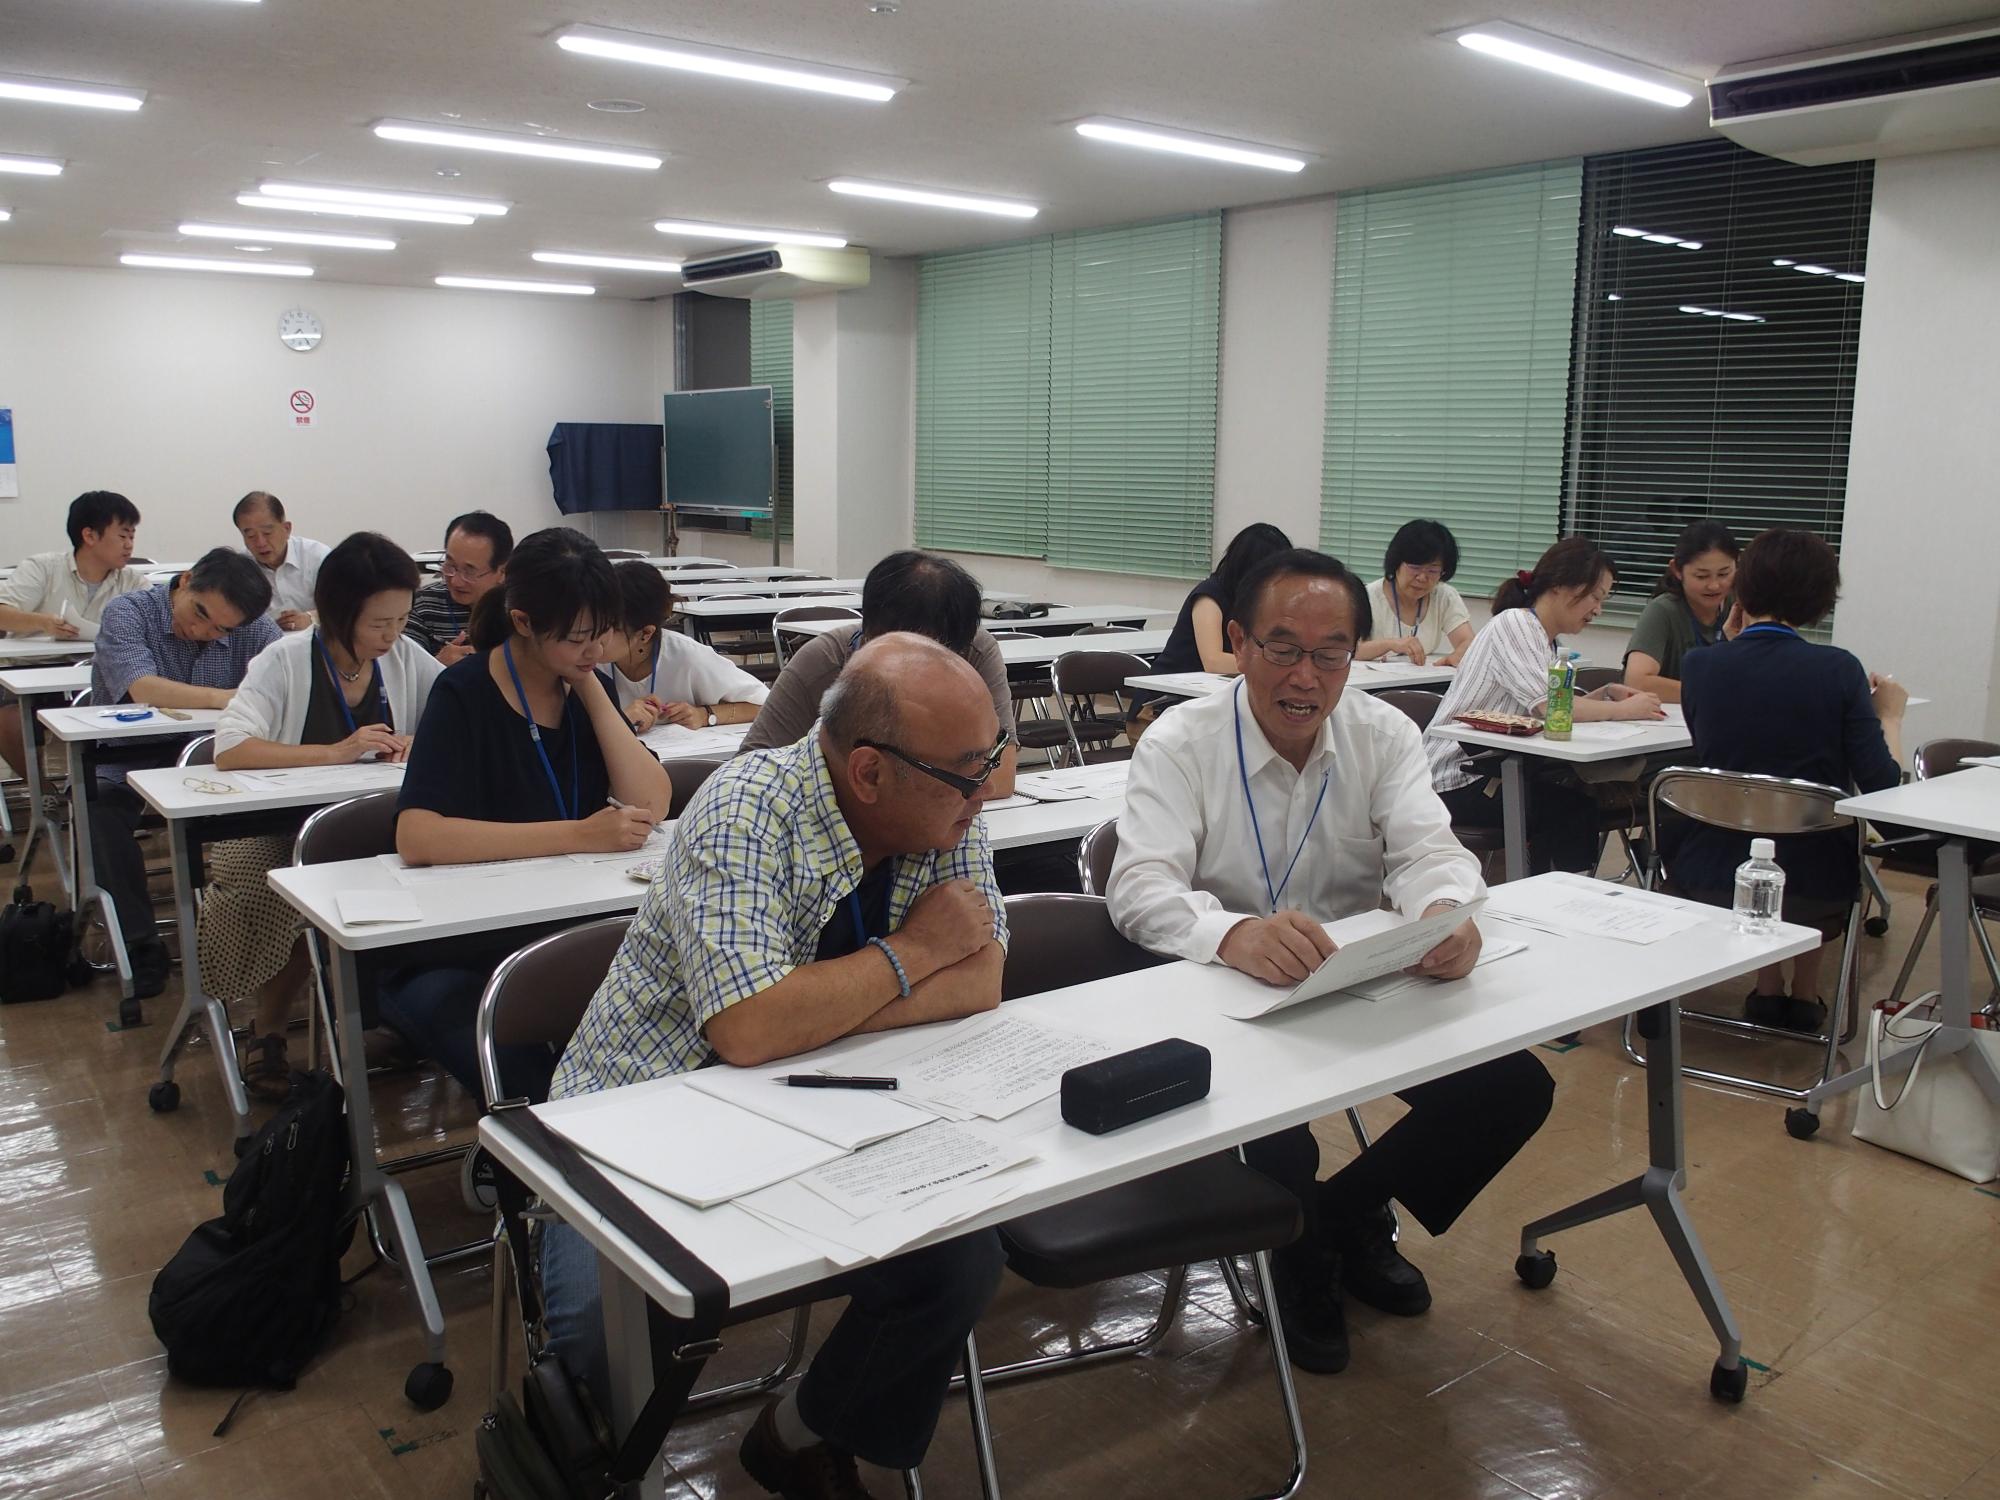 二人一組になって日本語指導者ボランティア養成講座が行われている様子の写真